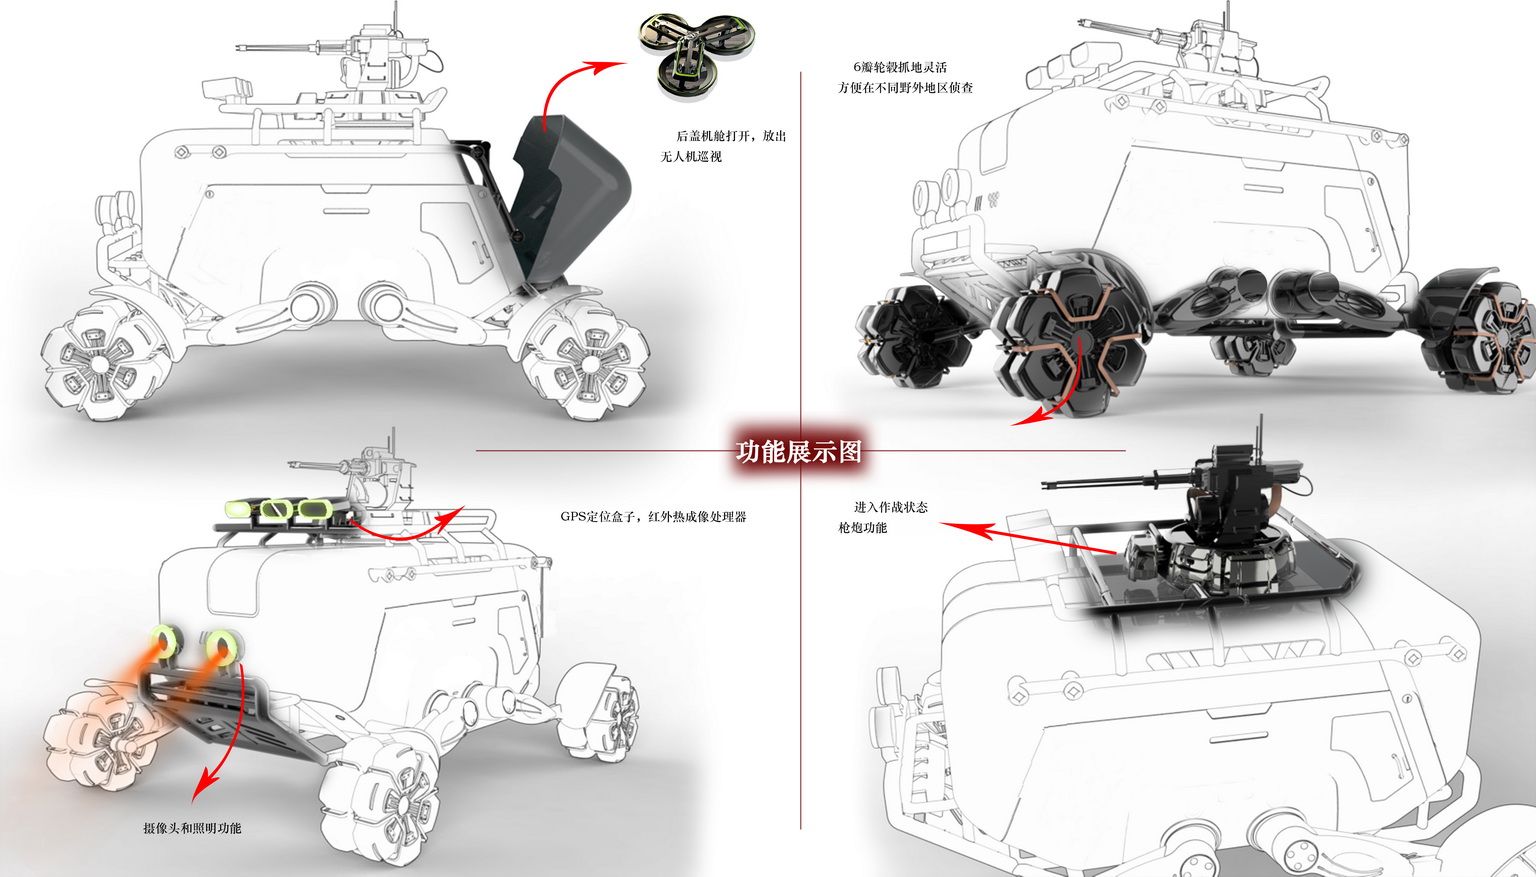 智能硬件竞赛作品——轮式无人装甲侦察车外观设计